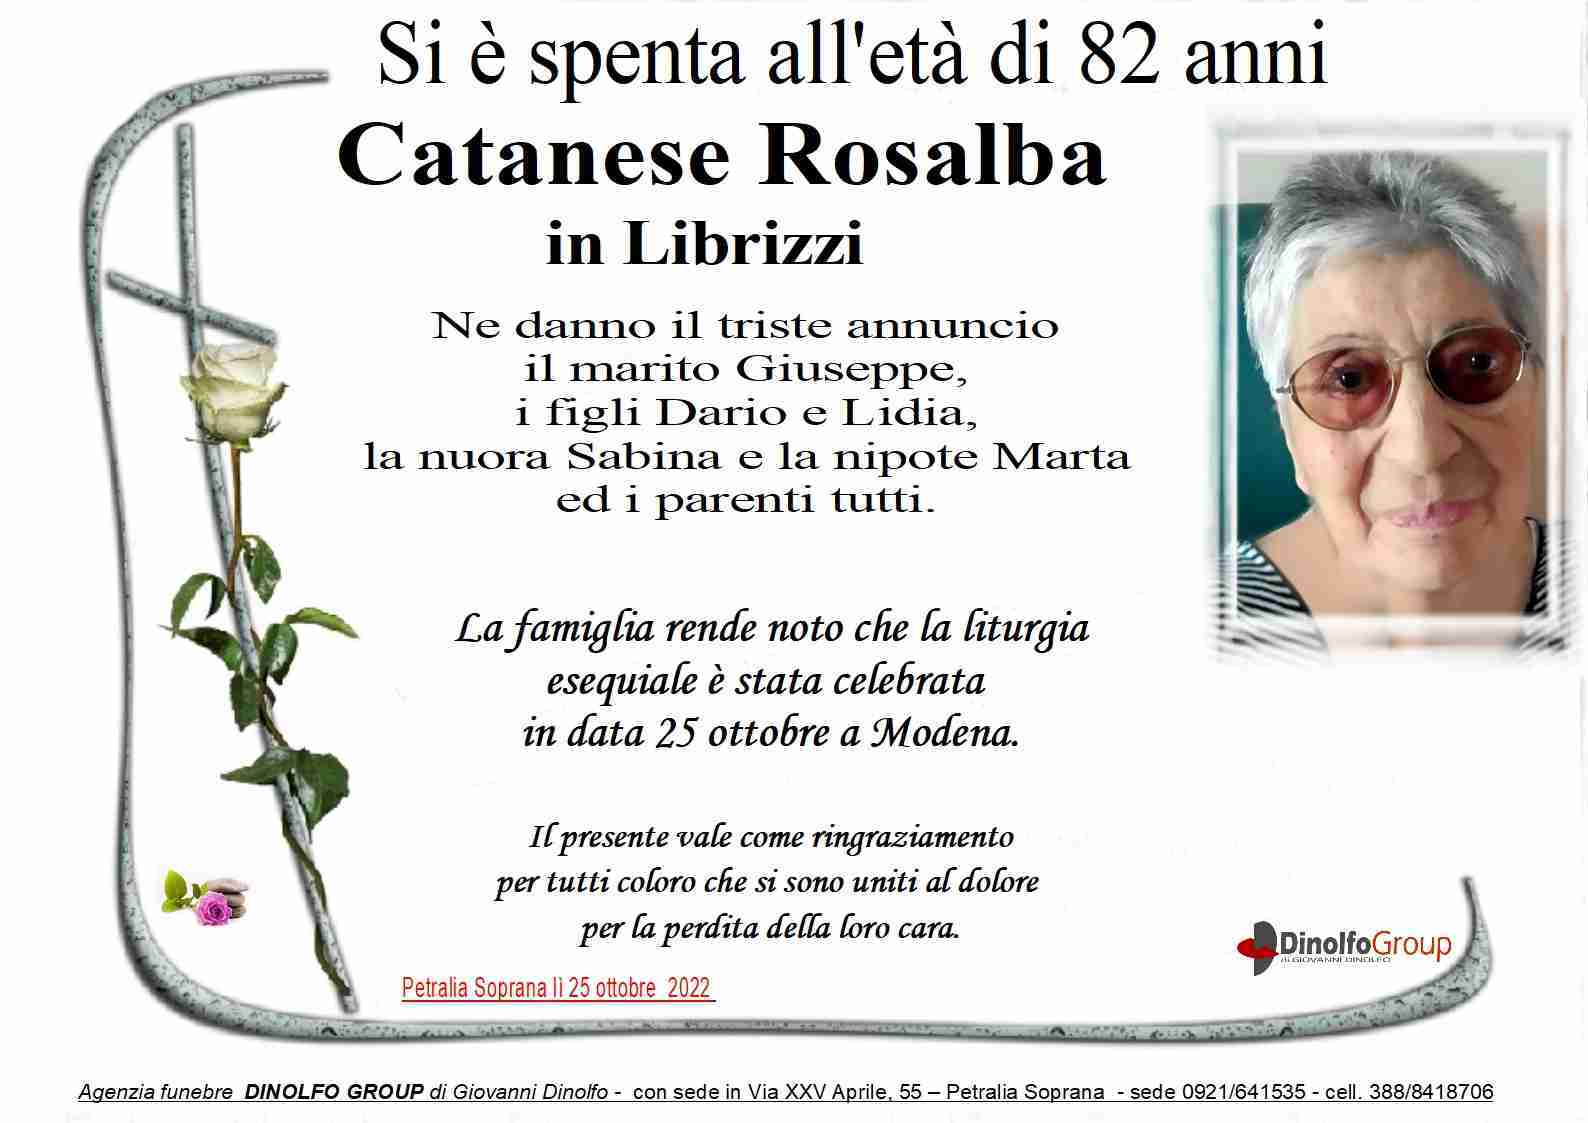 Rosalba Catanese